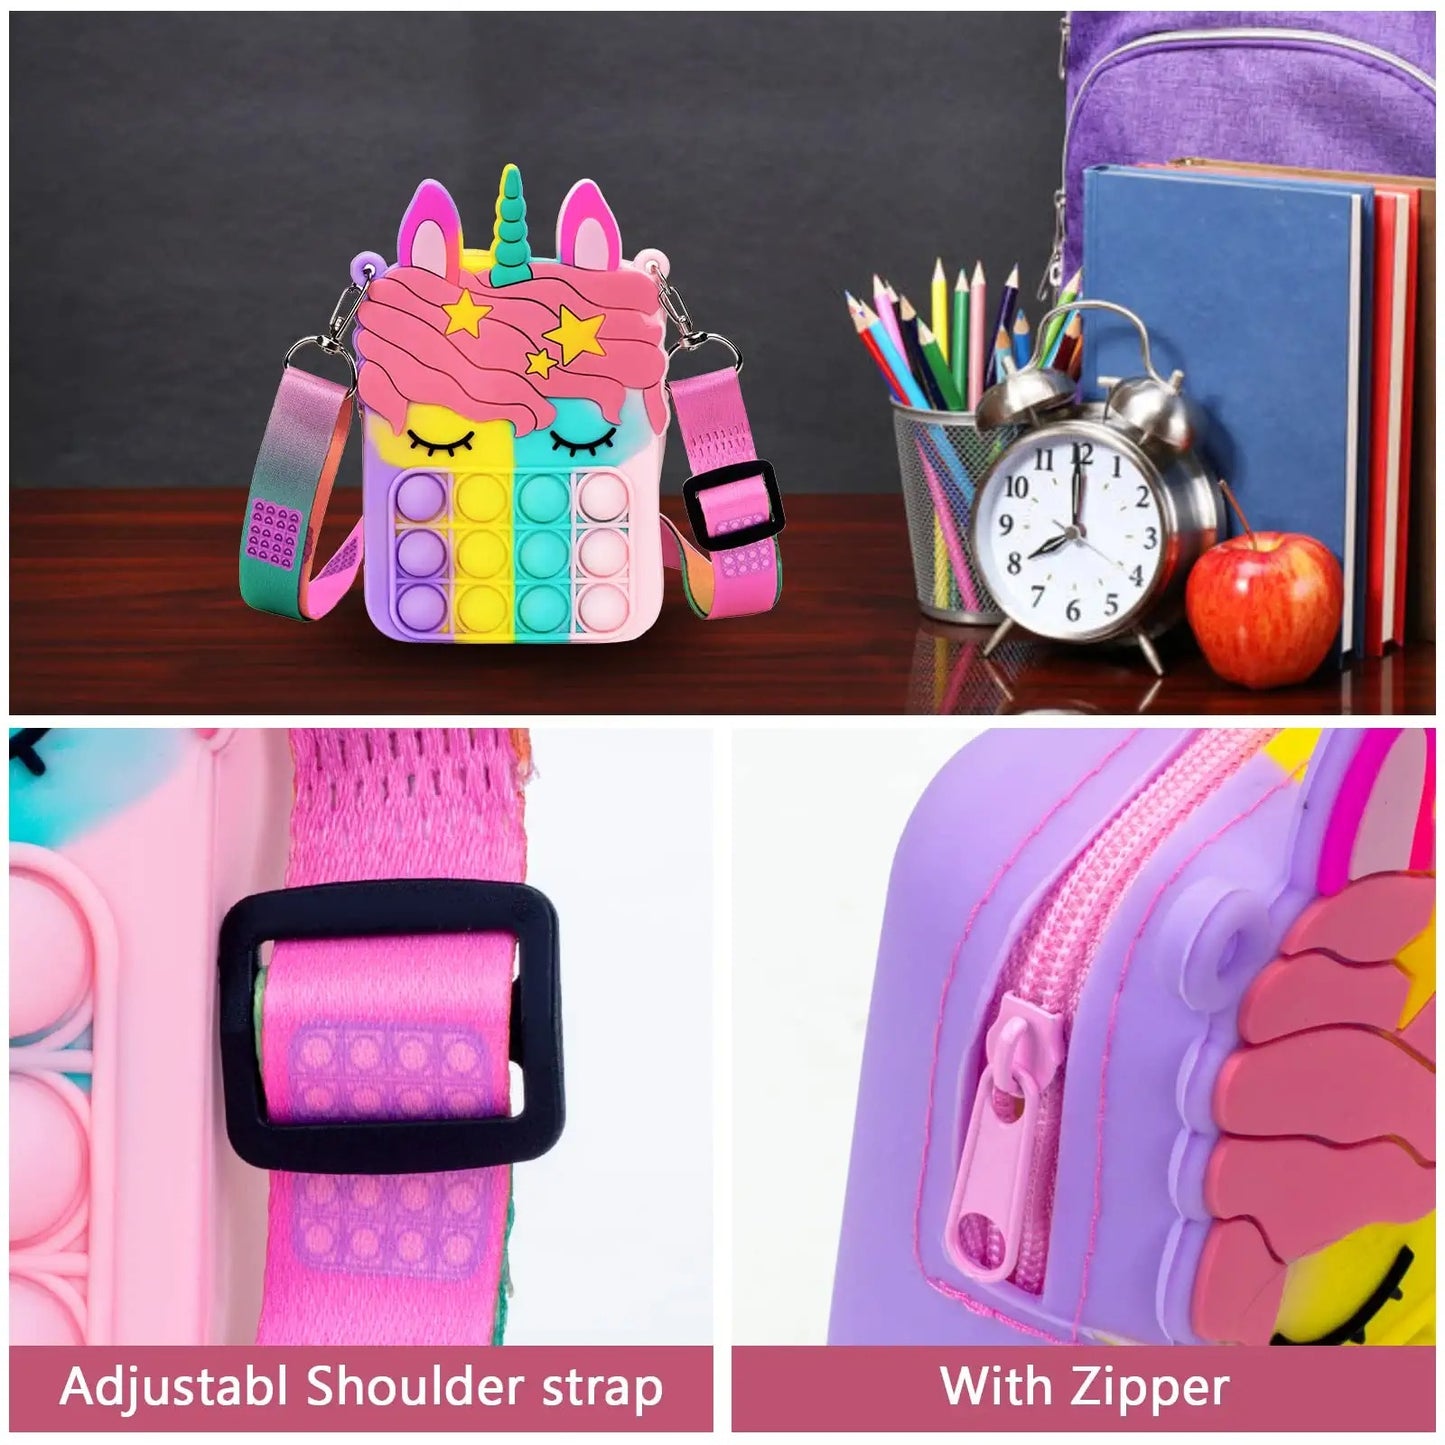 Girl Unicorn Pop Purse | Pop Bag With Unicorn Pop Toy, Shoulder Bag Fidget Toys | Pop Fidget bag